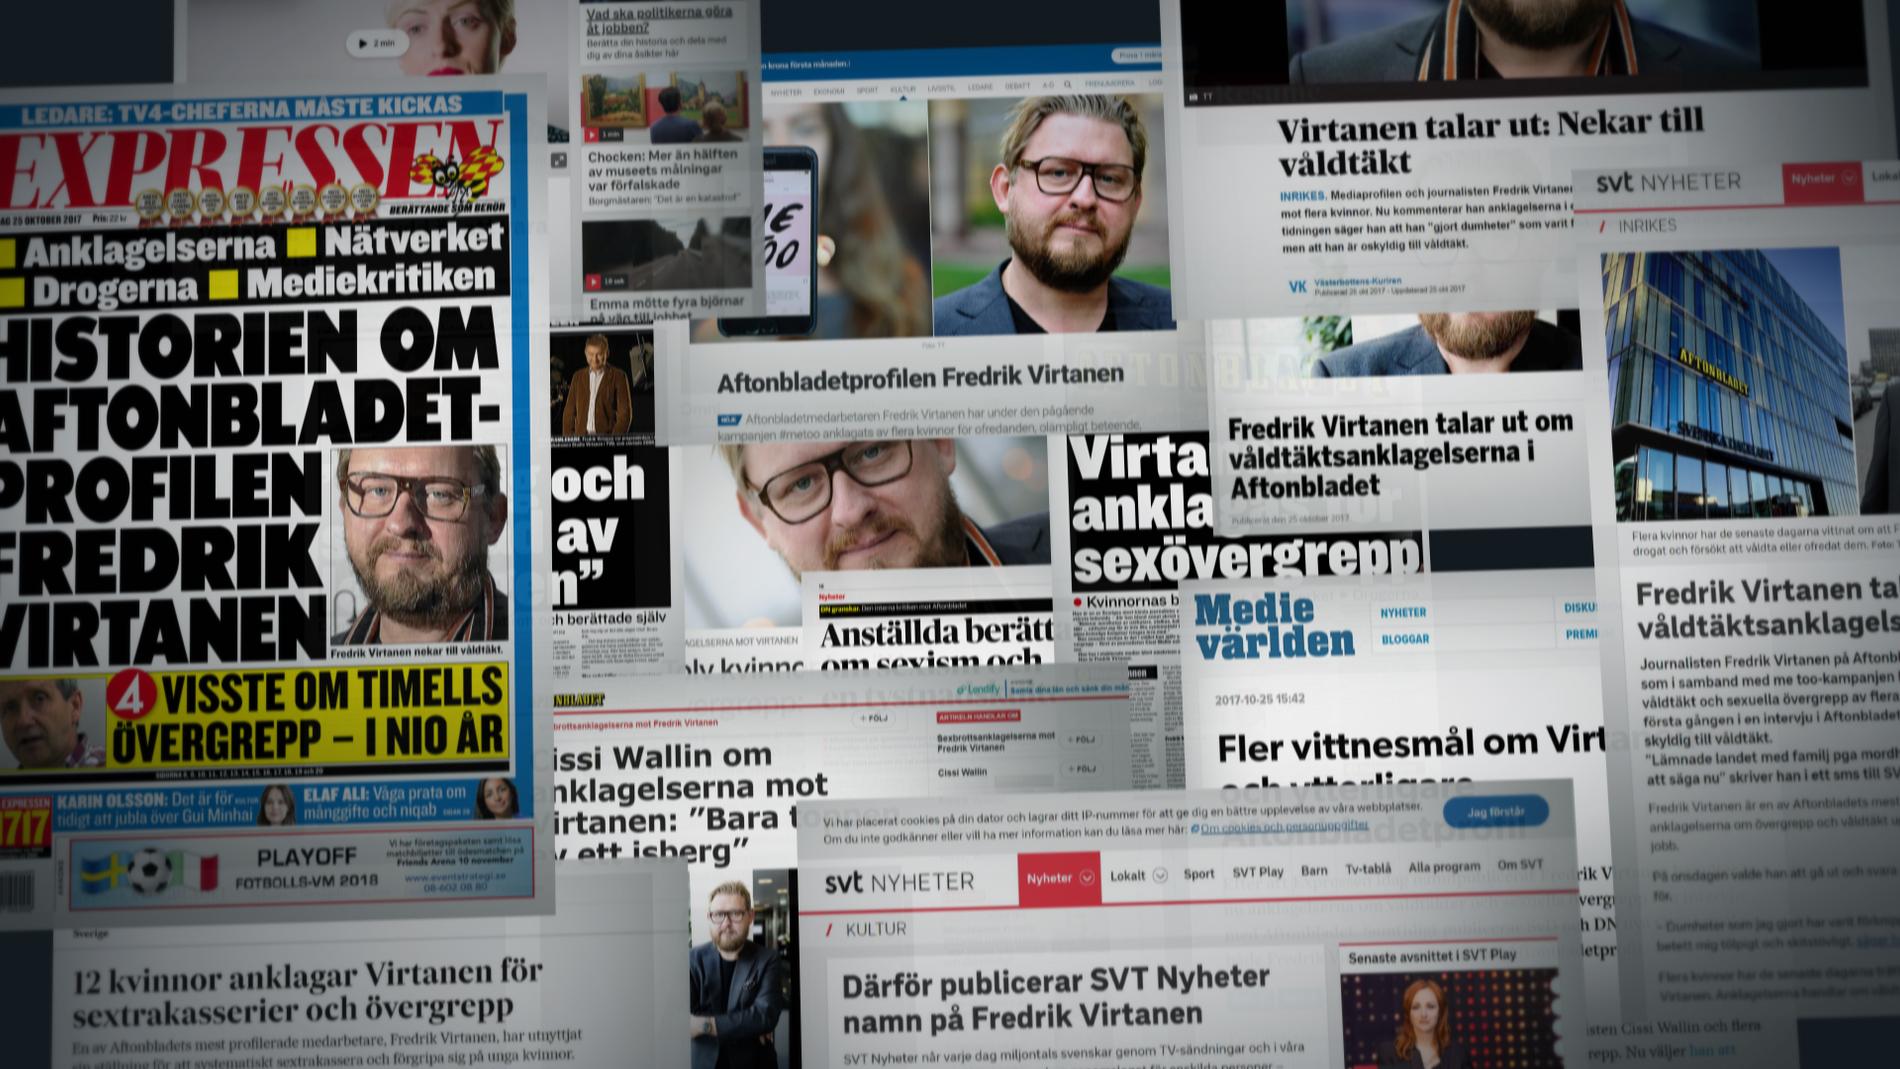 Hur ska en anklagad kunna försvara sig mot anklagelser utan avsändare?, skriver Nils Hanson och Ulf Johansson på SVT:s Uppdrag Granskning efter fällningarna i Pressens Opinionsnämnd angående #metoo.